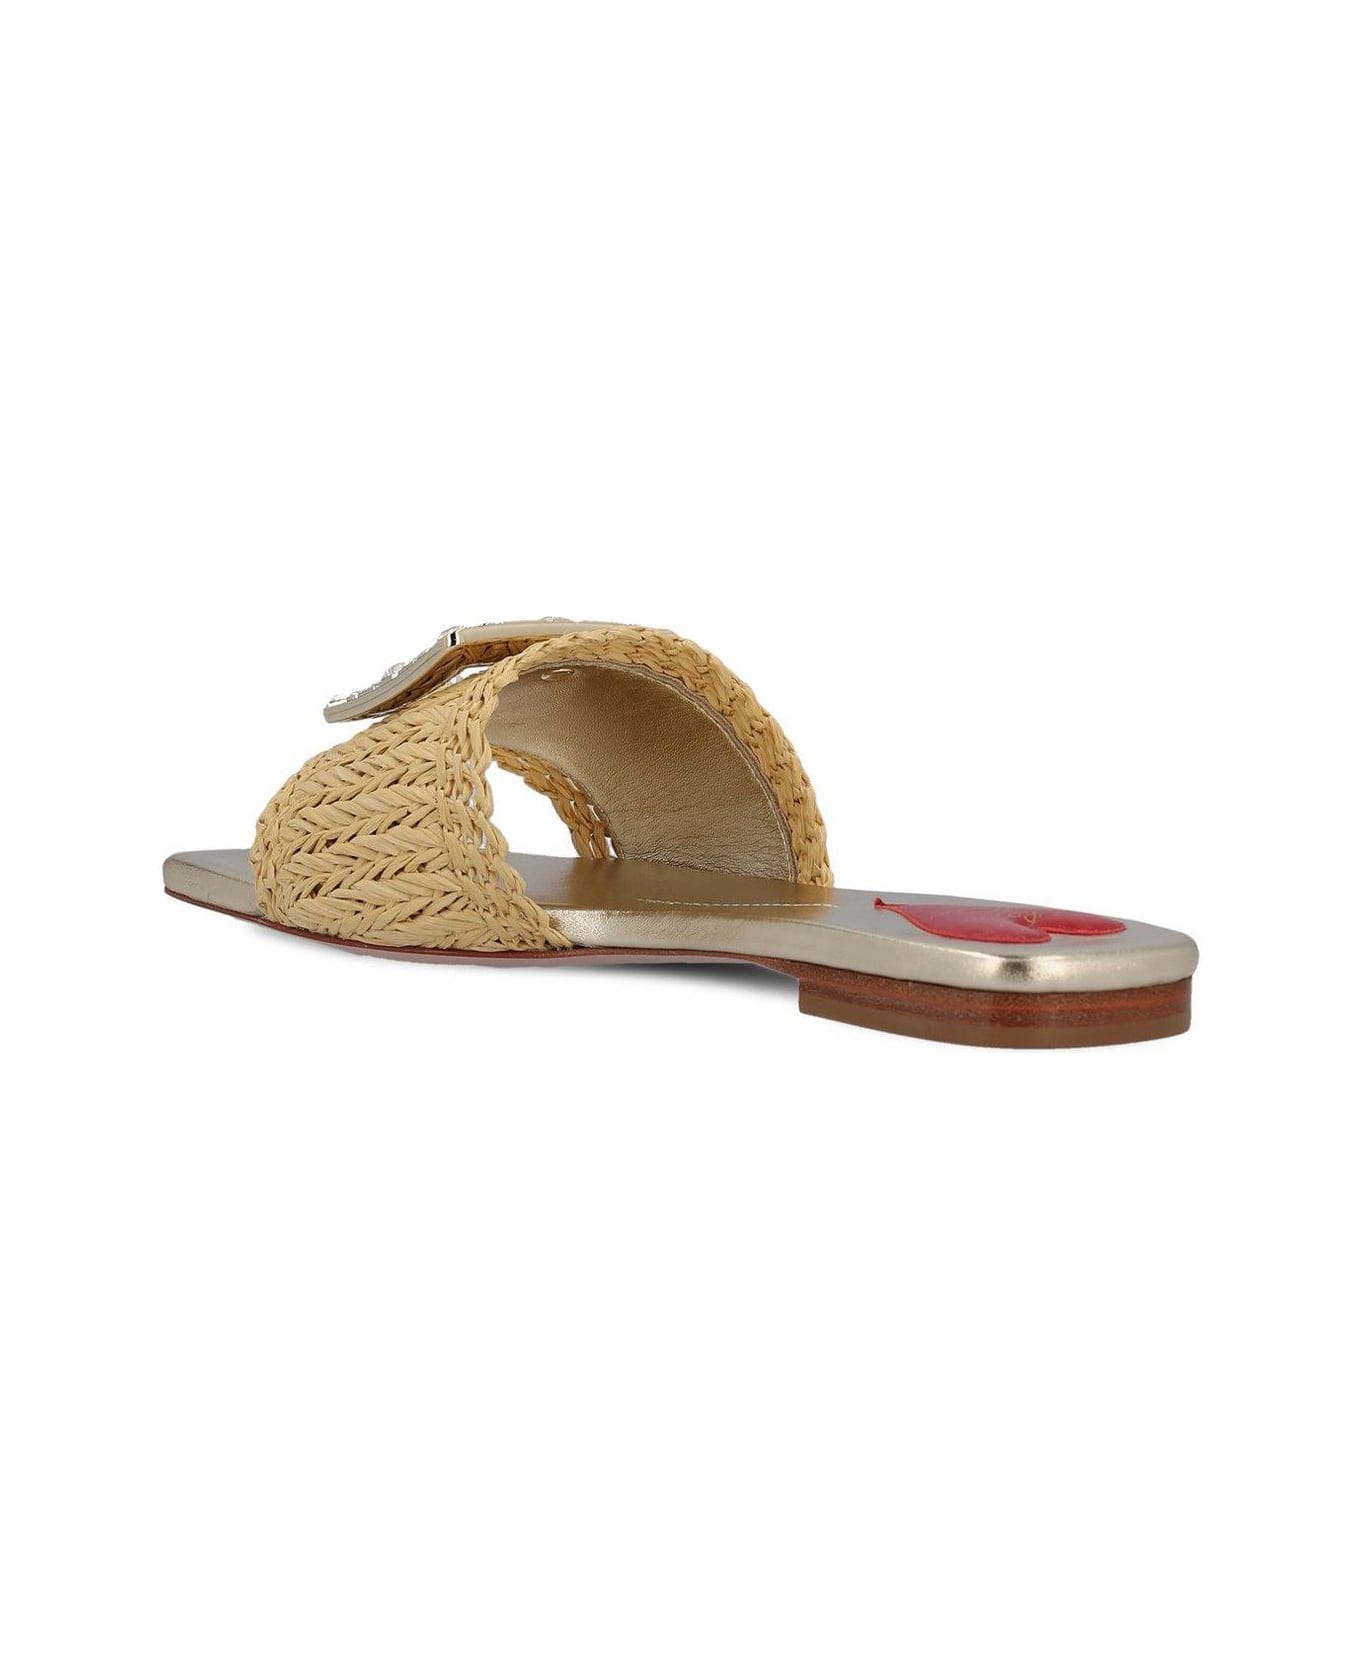 Roger Vivier Embellished Slip-on Sandals - Beige